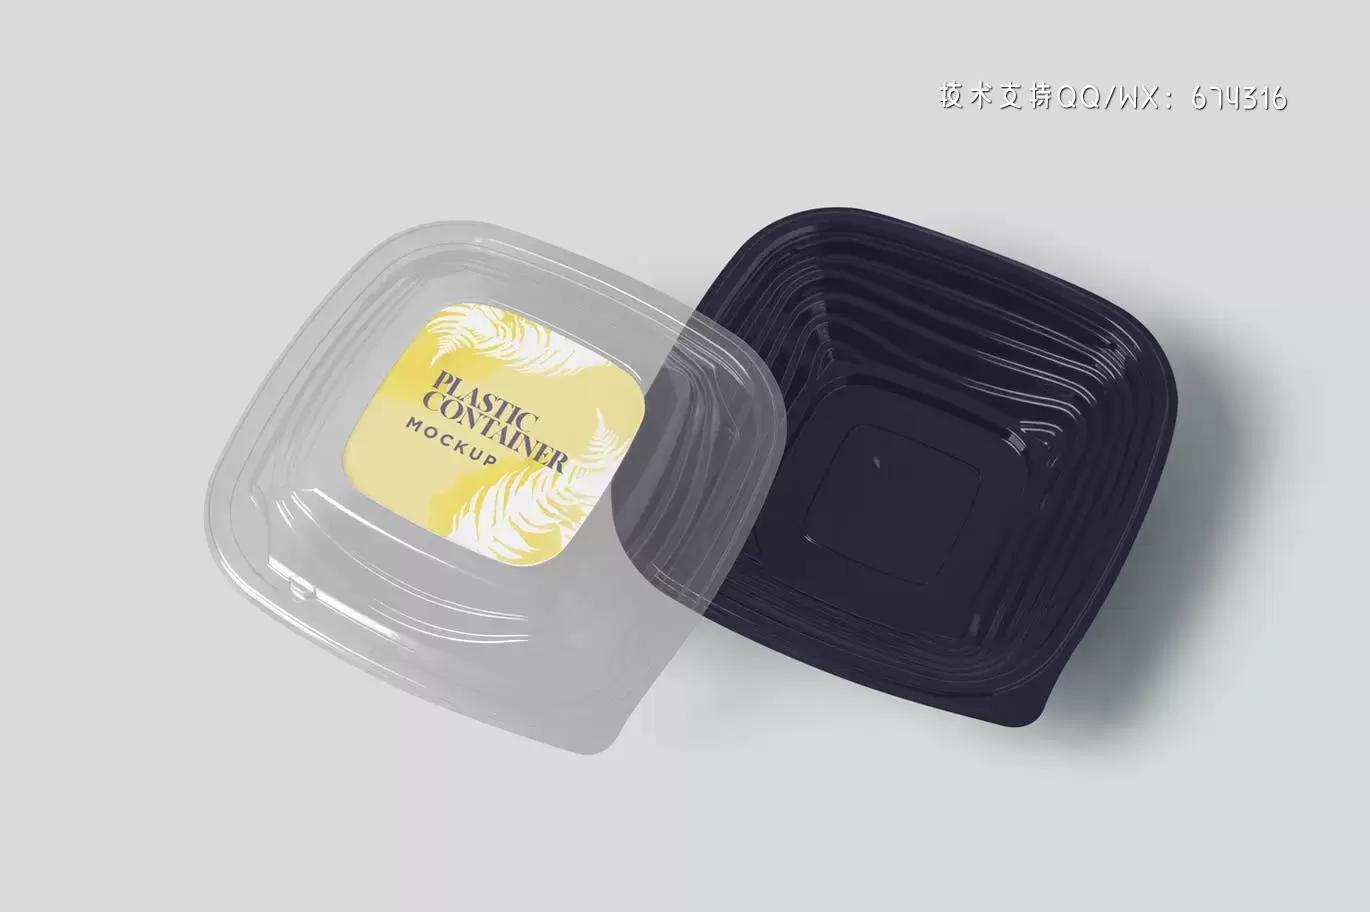 高品质的食品外卖包装设计VI样机展示模型mockups免费下载插图4